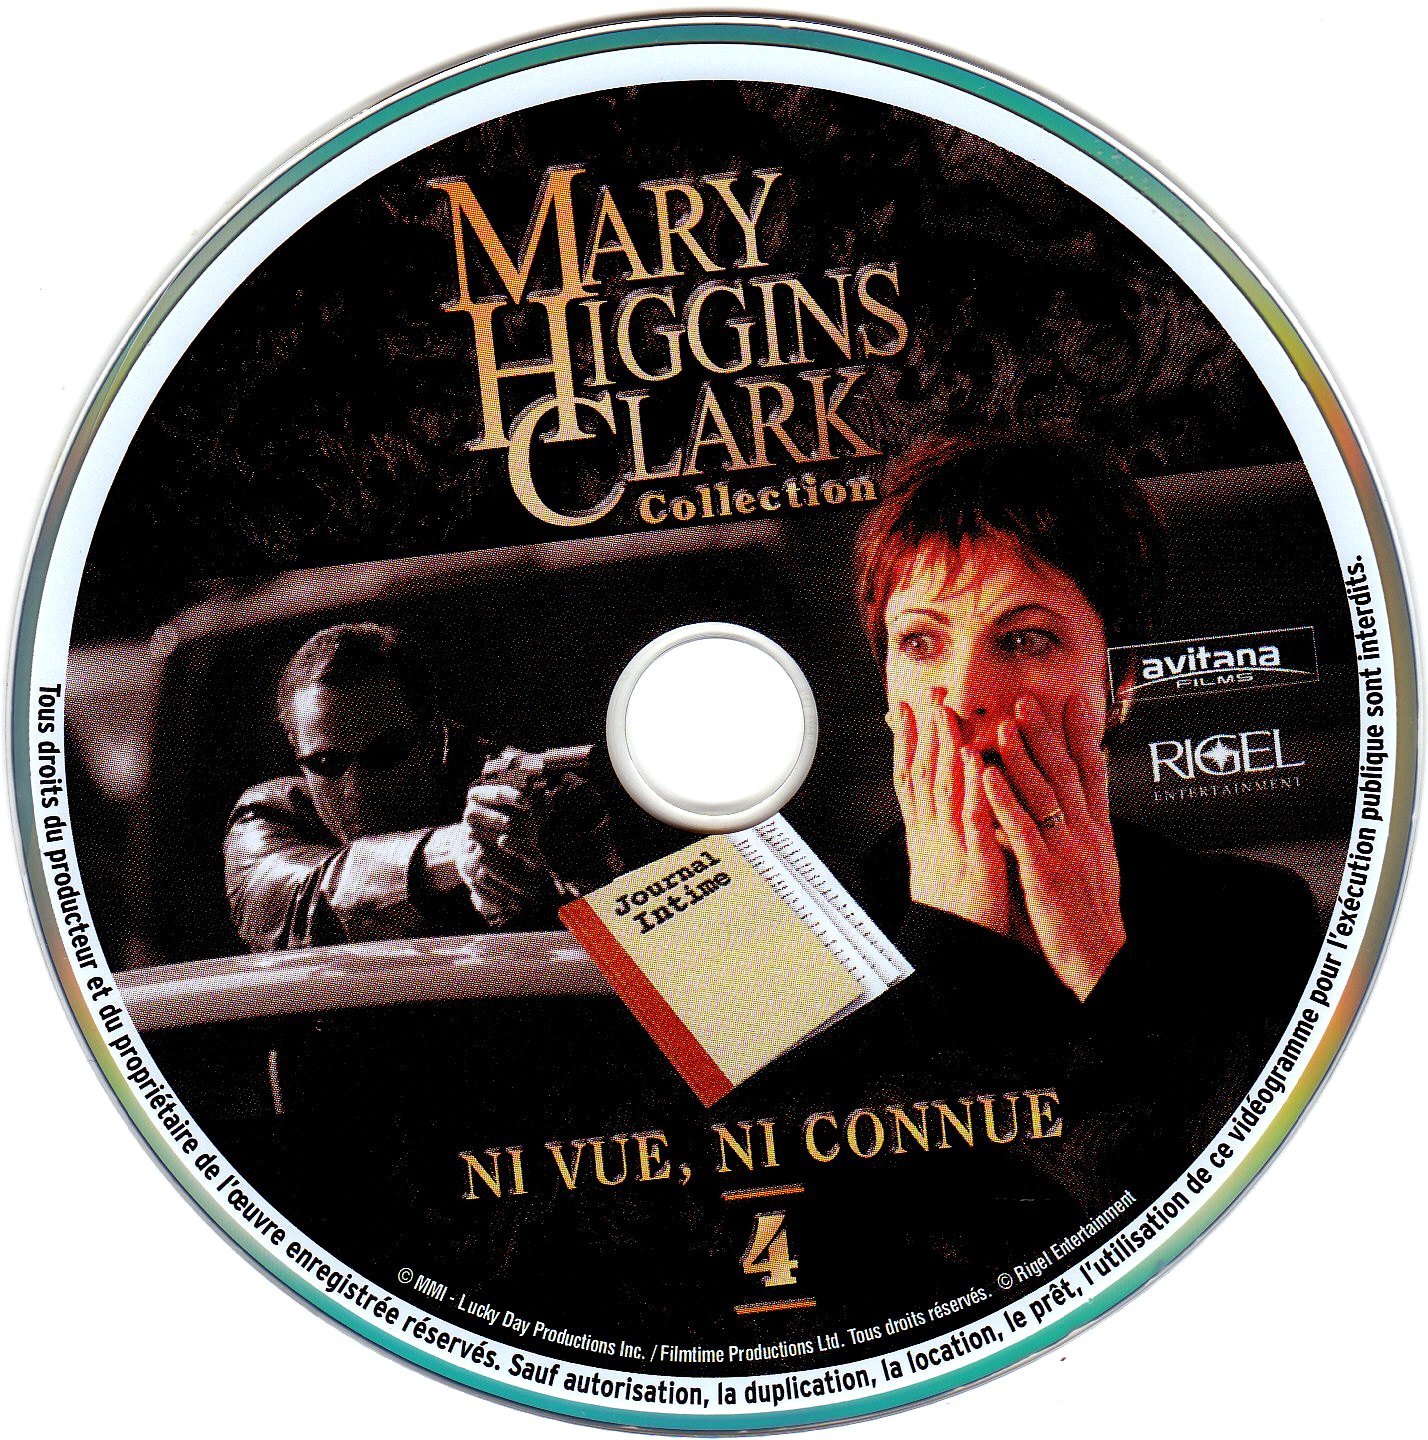 Sticker de Mary Higgins Clark vol 04 - Ni vue ni connue - Cinéma Passion1428 x 1440